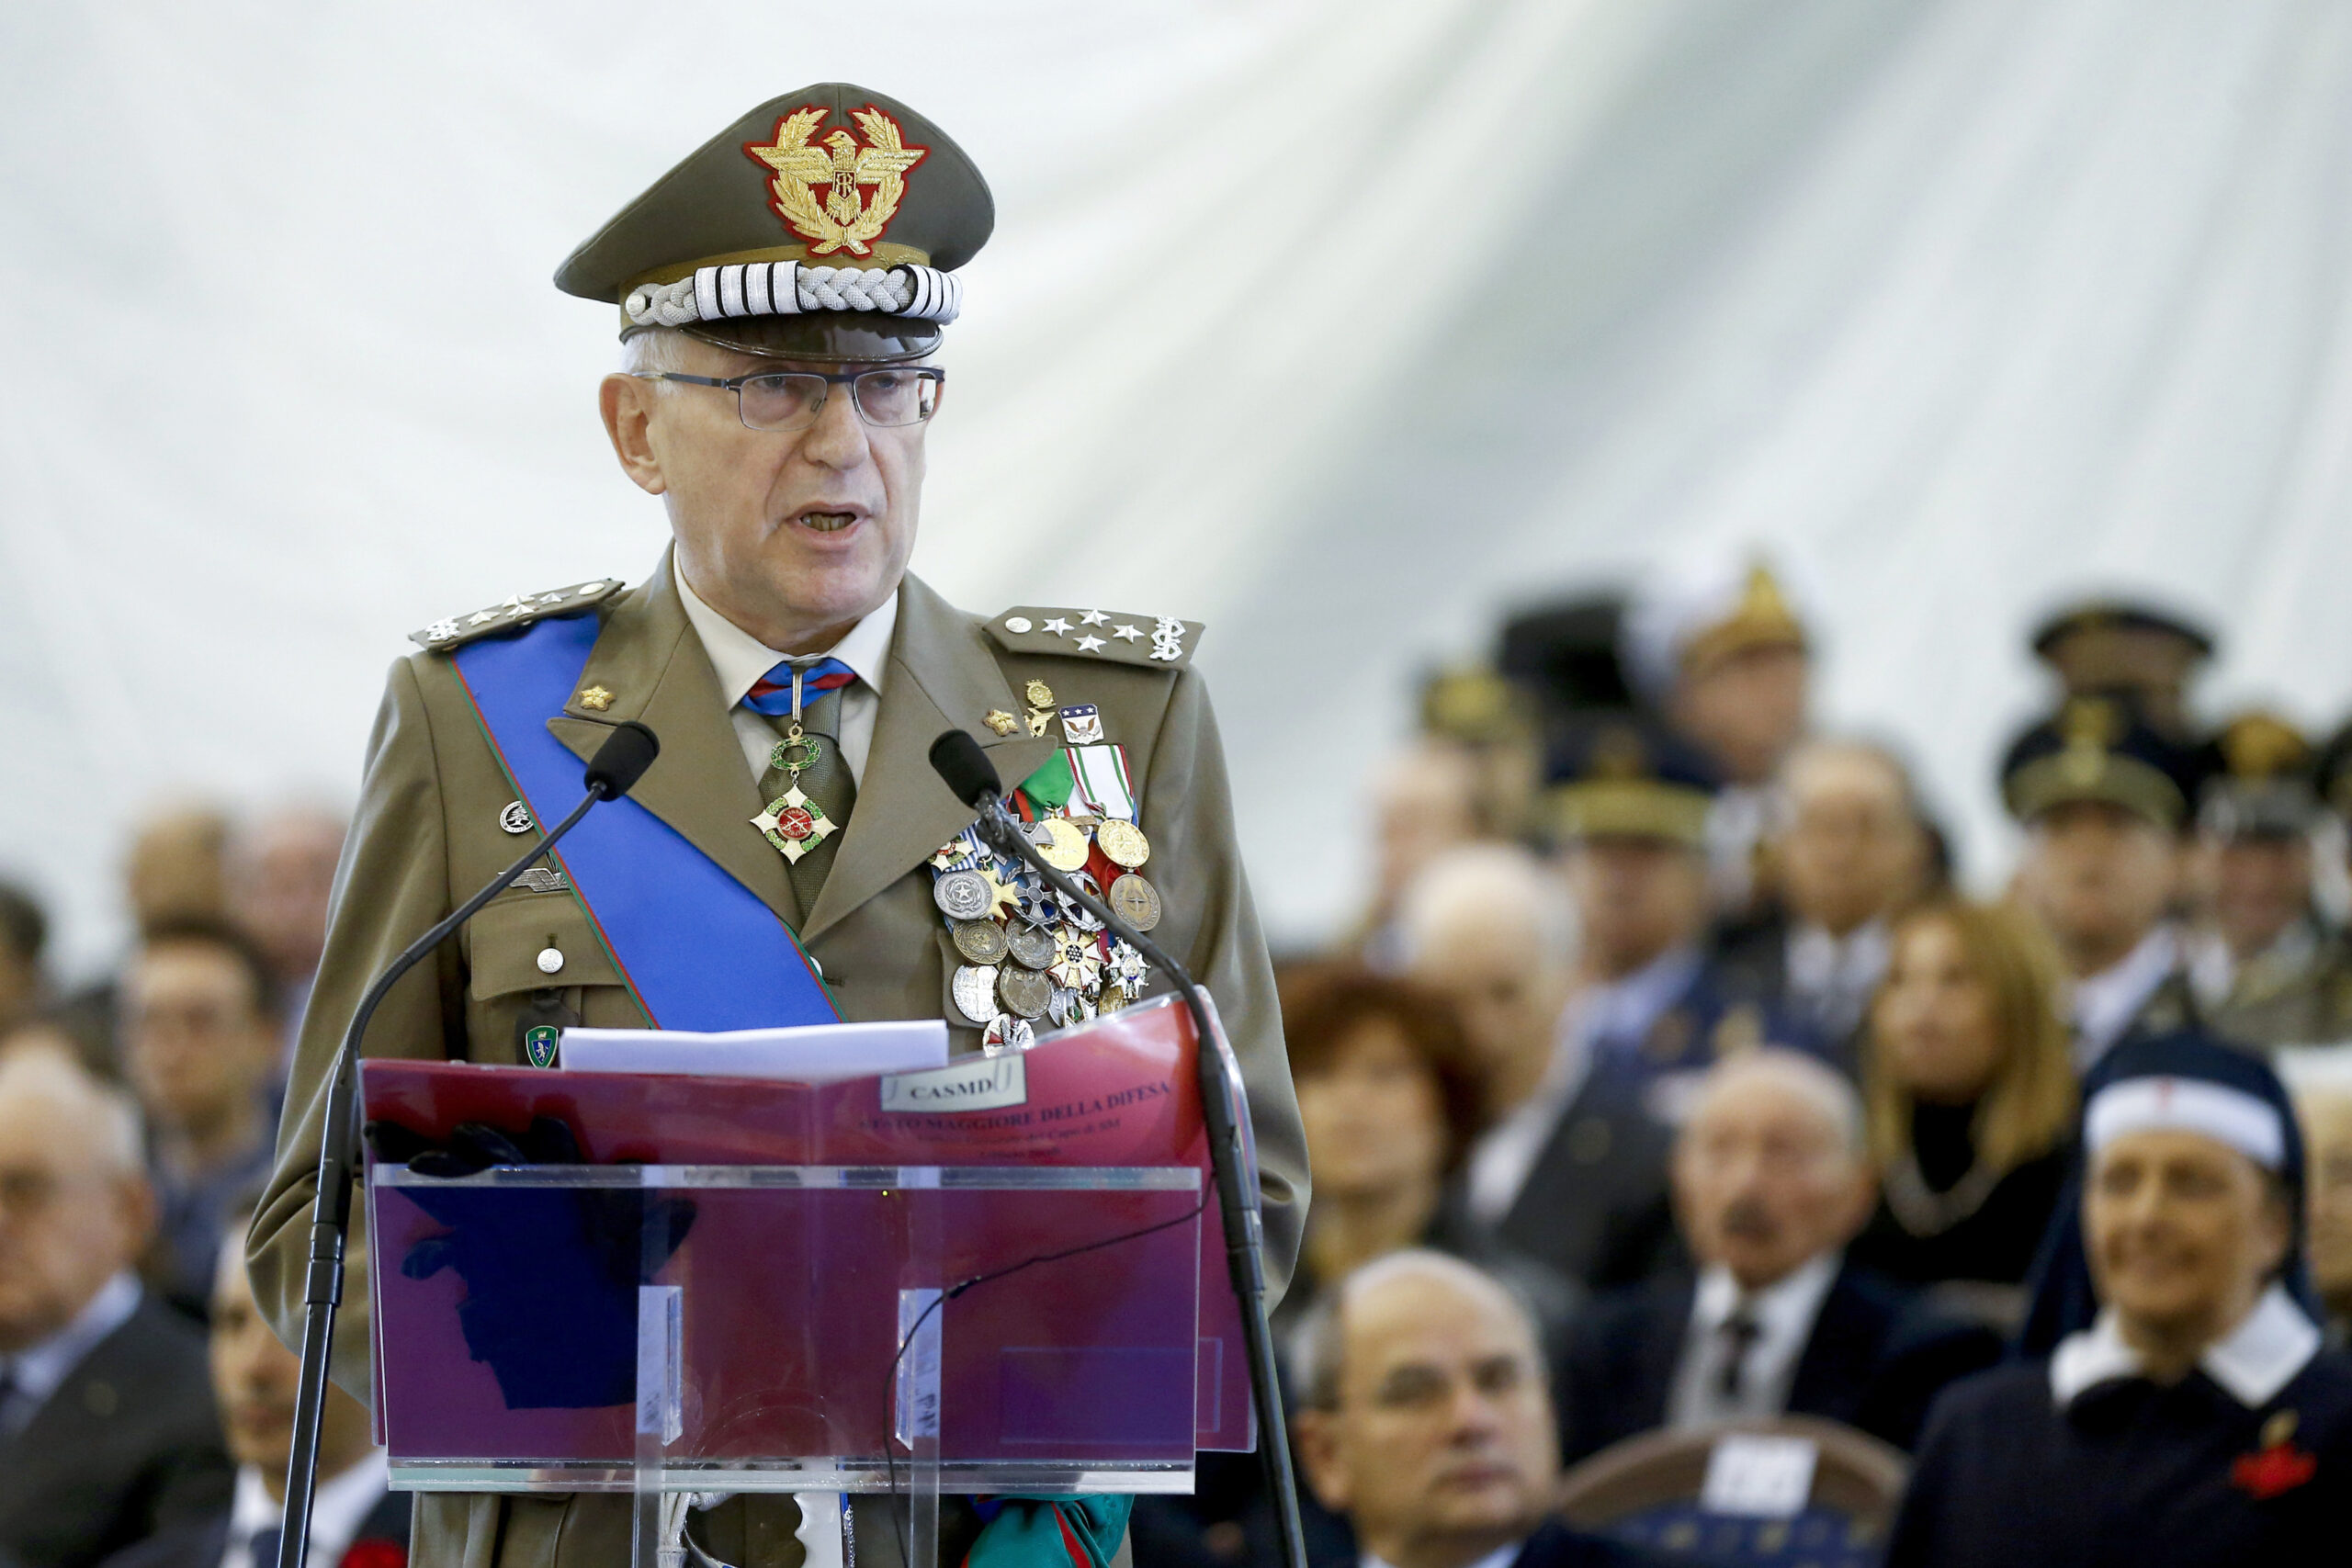 Trovato morto Claudio Graziano, presidente di Fincantieri: è stato l'ex Capo di Stato Maggiore, aveva 71 anni